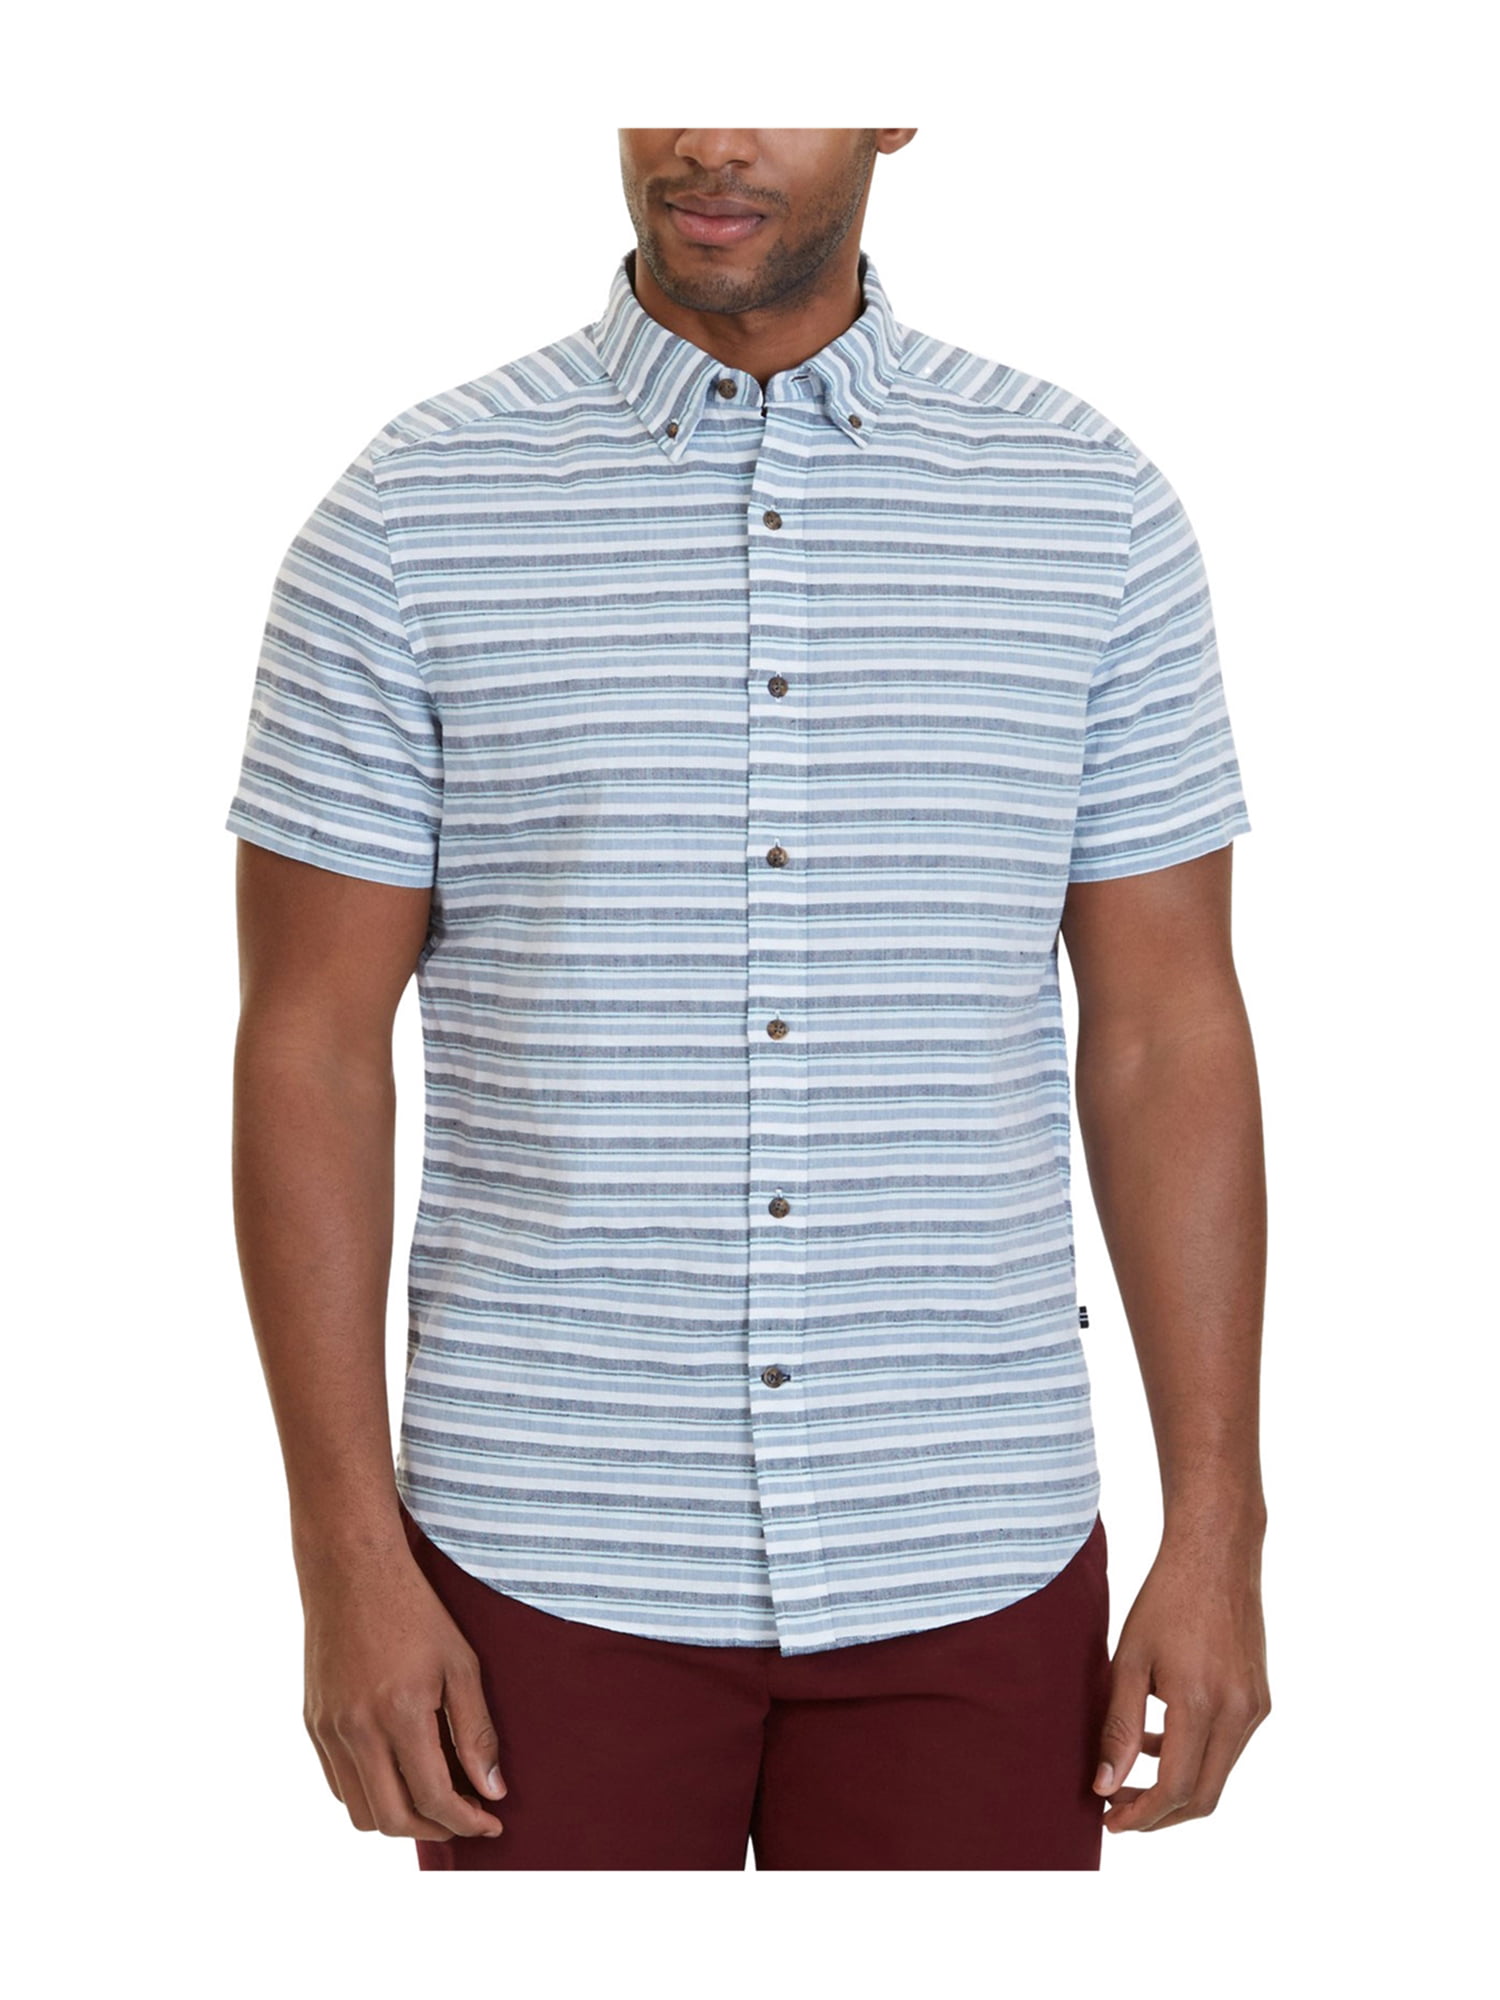 Nautica - Nautica Mens Horizontal Stripe Button Up Shirt - Walmart.com ...